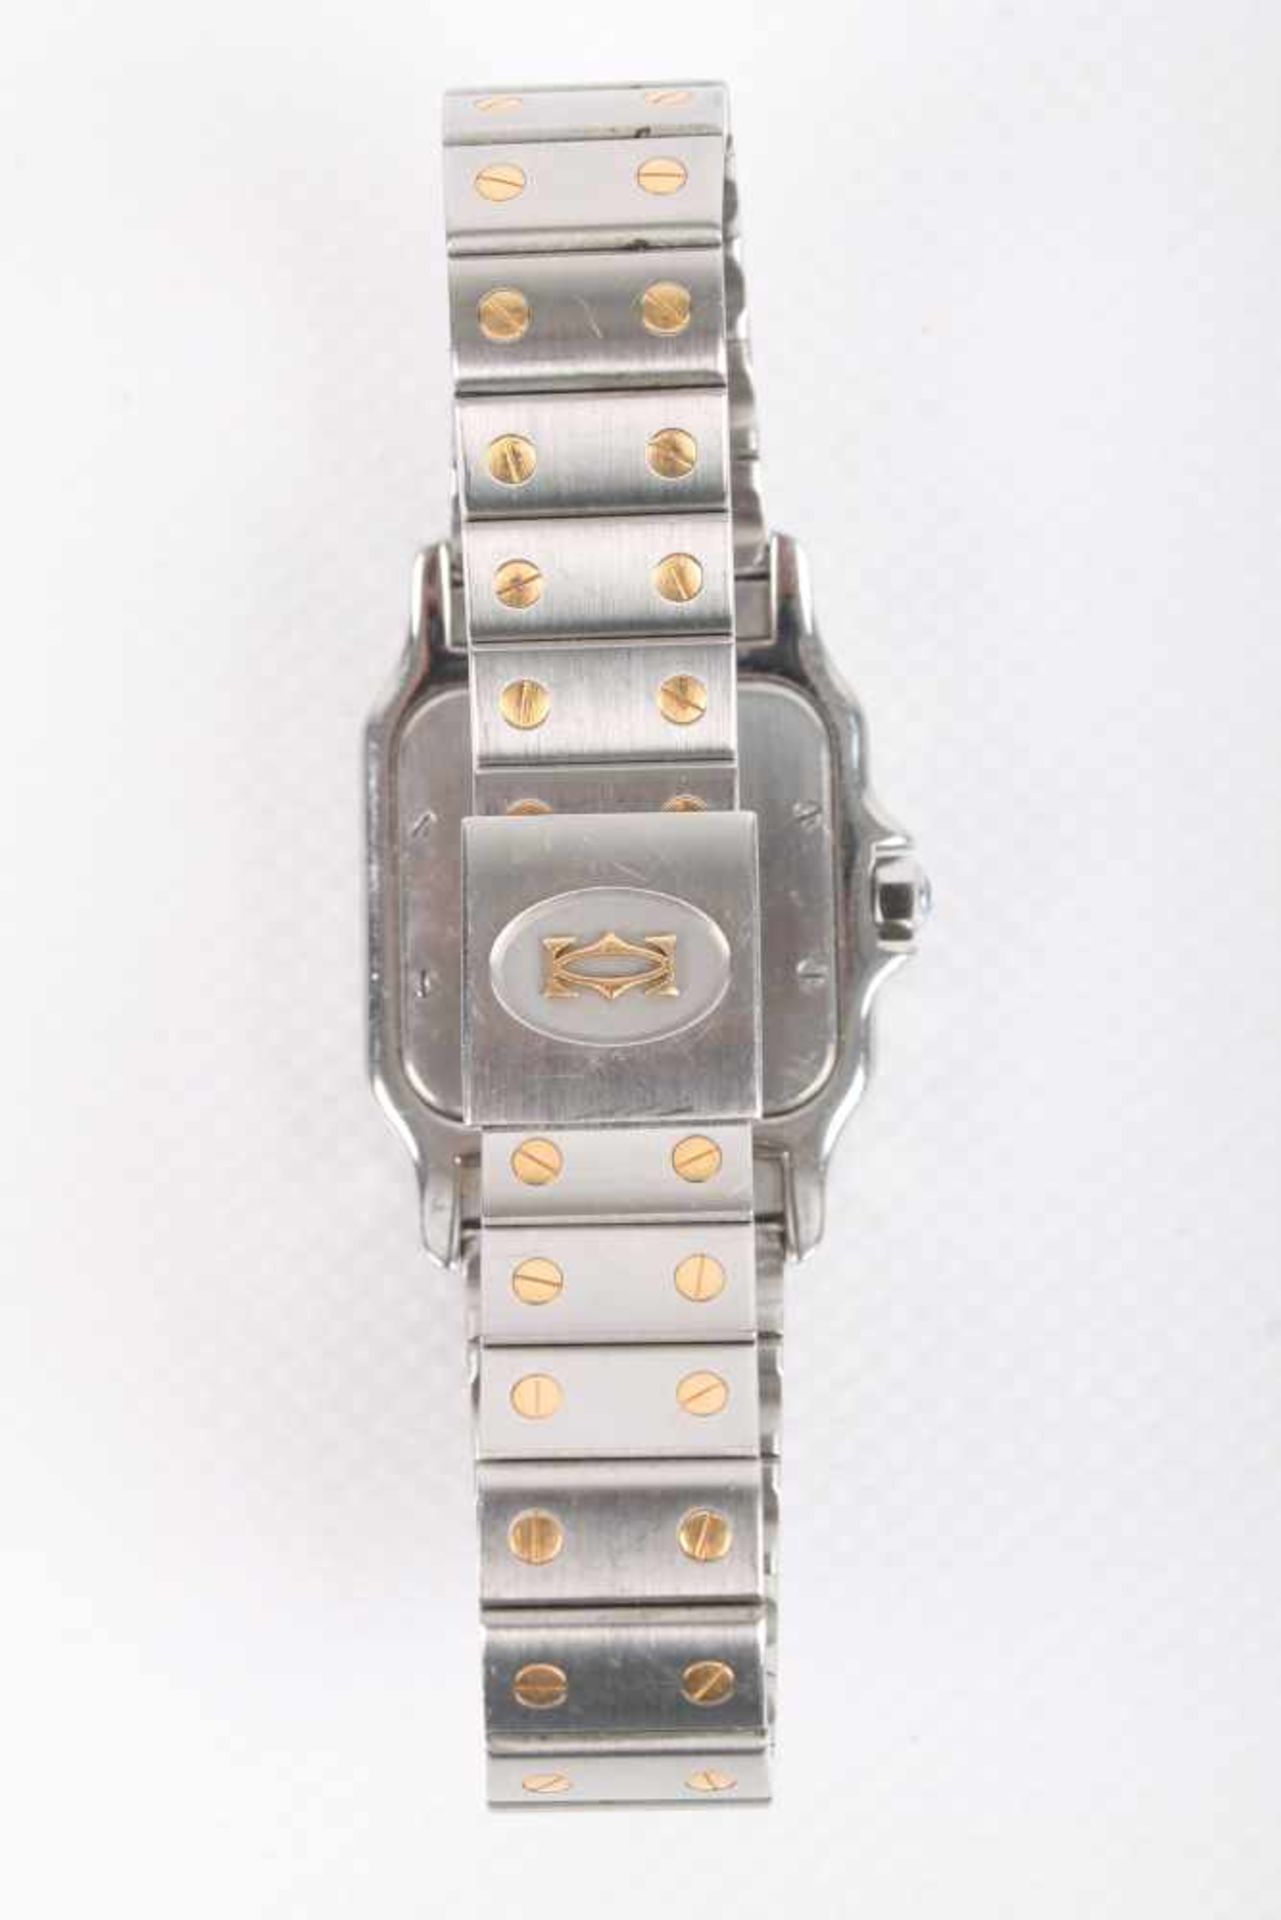 Cartier Santos Galbee Herrenuhr Armbanduhr Stahl/Gold 750, men's watch steel / 18K gold, - Bild 4 aus 7